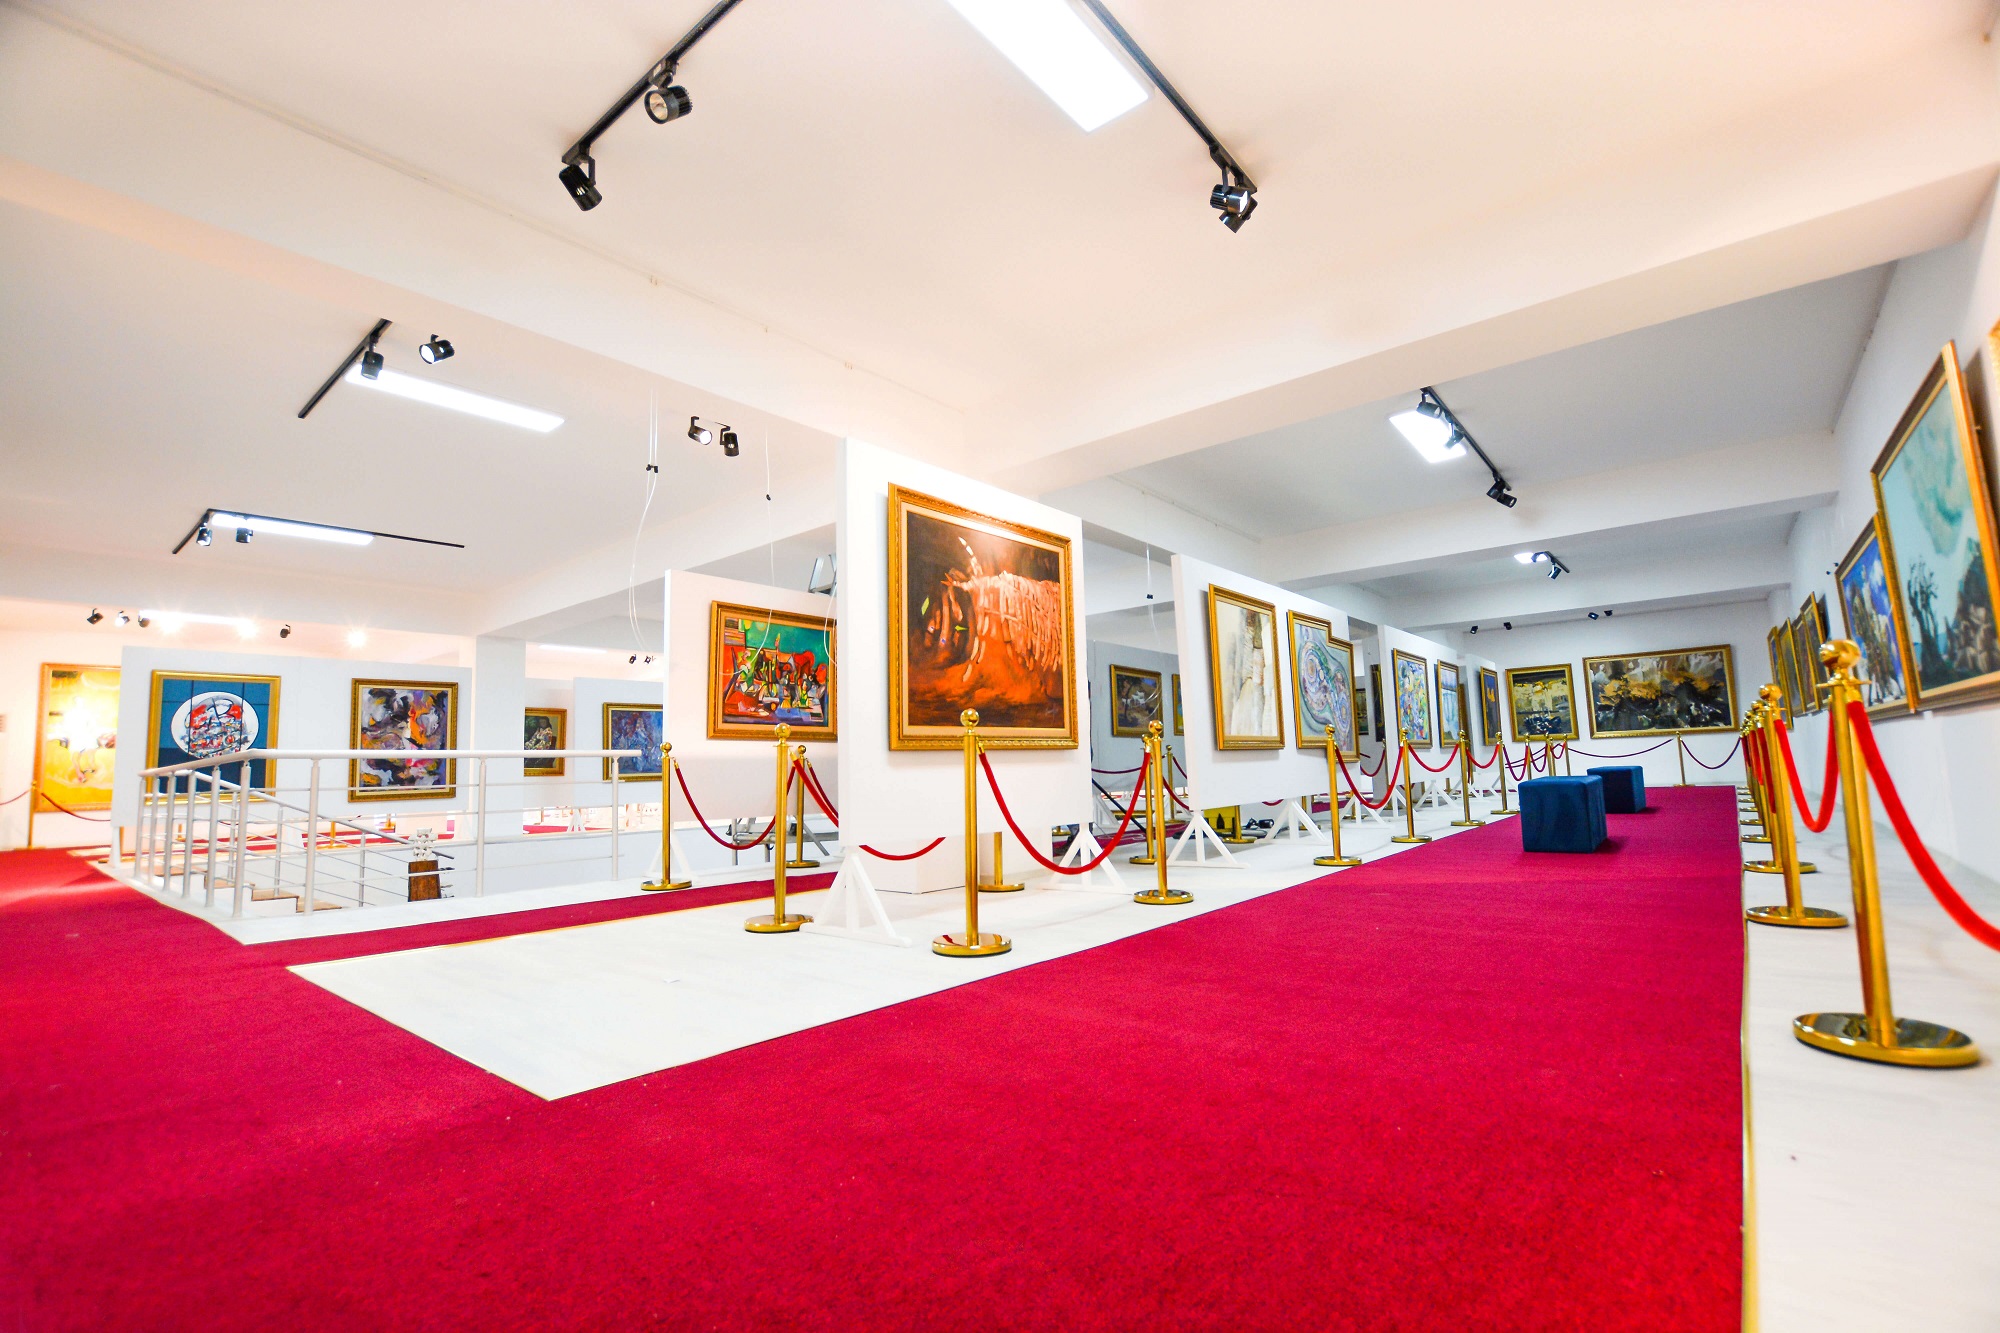 Kıbrıs Modern Sanat Müzesi, Kıbrıs Araba Müzesi, Günsel Sanat Müzesi ile Herbaryum Müzesi’ne 20 Temmuz’dan İtibaren Ağustos Ayı Sonuna Kadar Tüm Müzelere Girişler Ücretsiz…